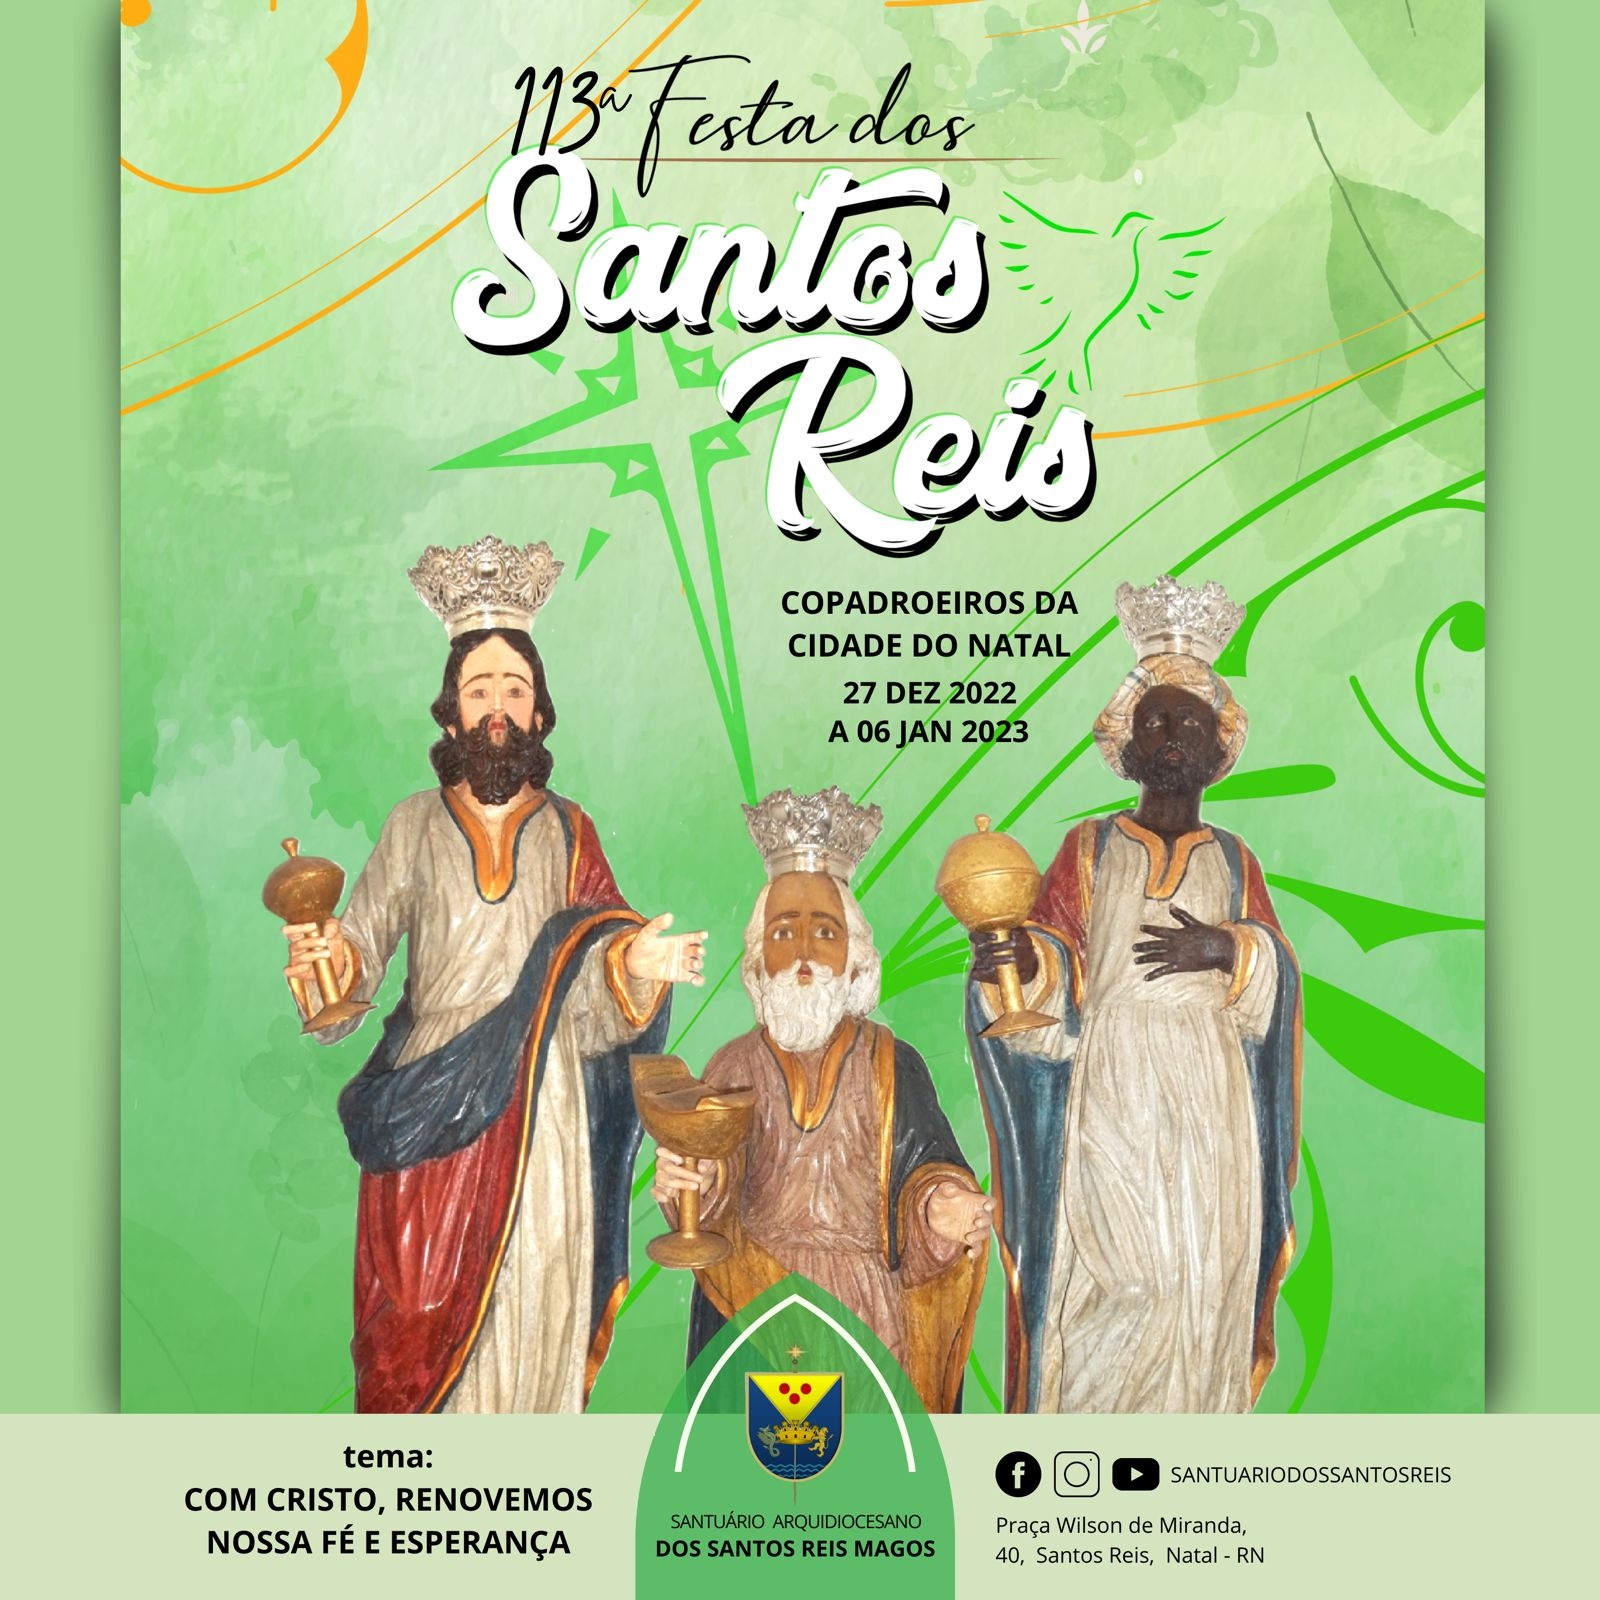 Bairro de Santos Reis celebra a 113ª festa dos copadroeiros da cidade de Natal